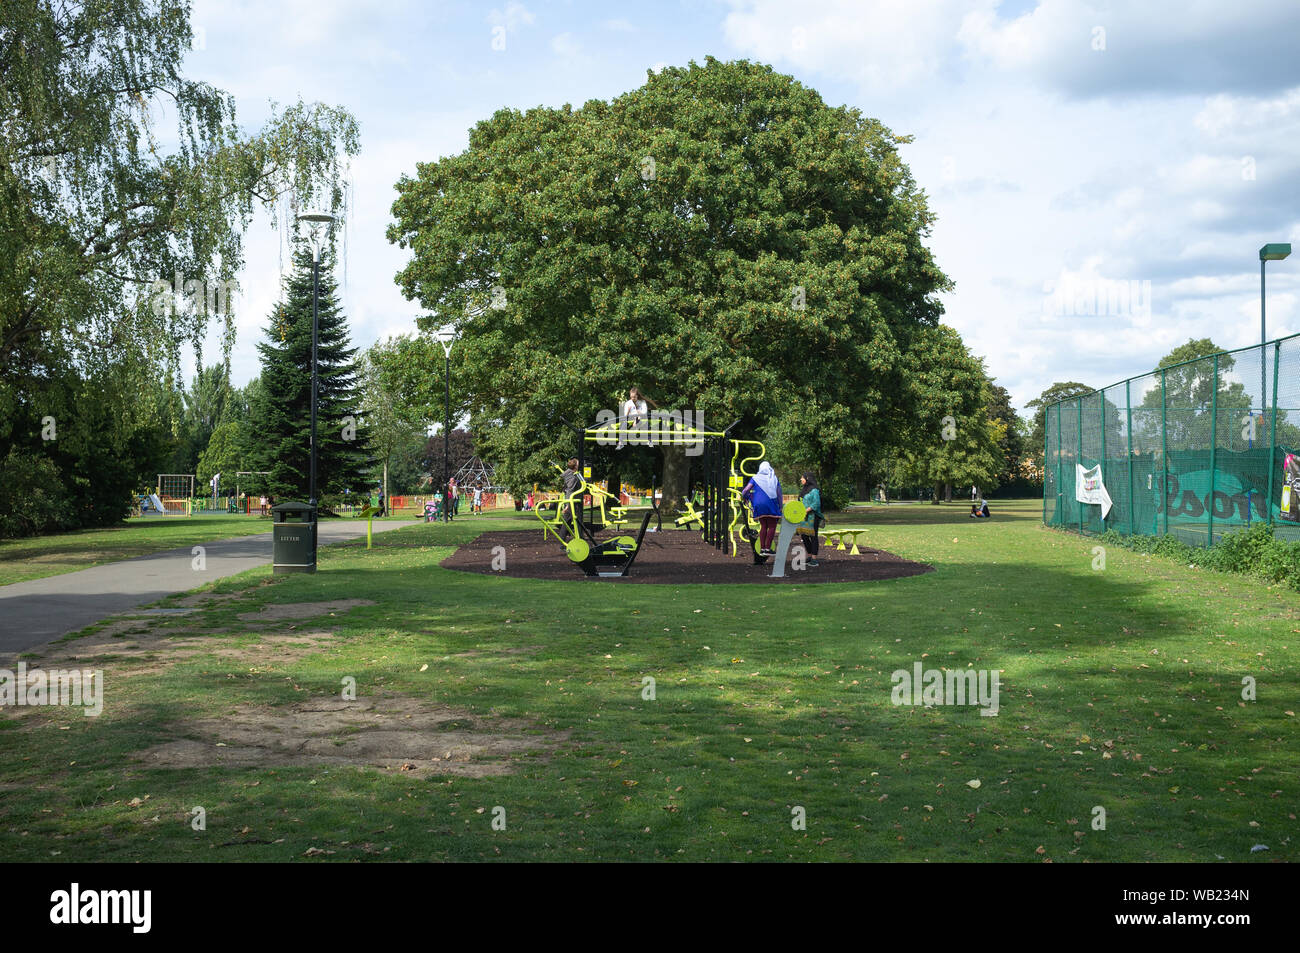 Sale Hill Park, Slough, Berkshire, Regno Unito - un parco giochi per bambini e ragazzi. La città è ben servita con spazi verdi e di aree di gioco. Foto Stock